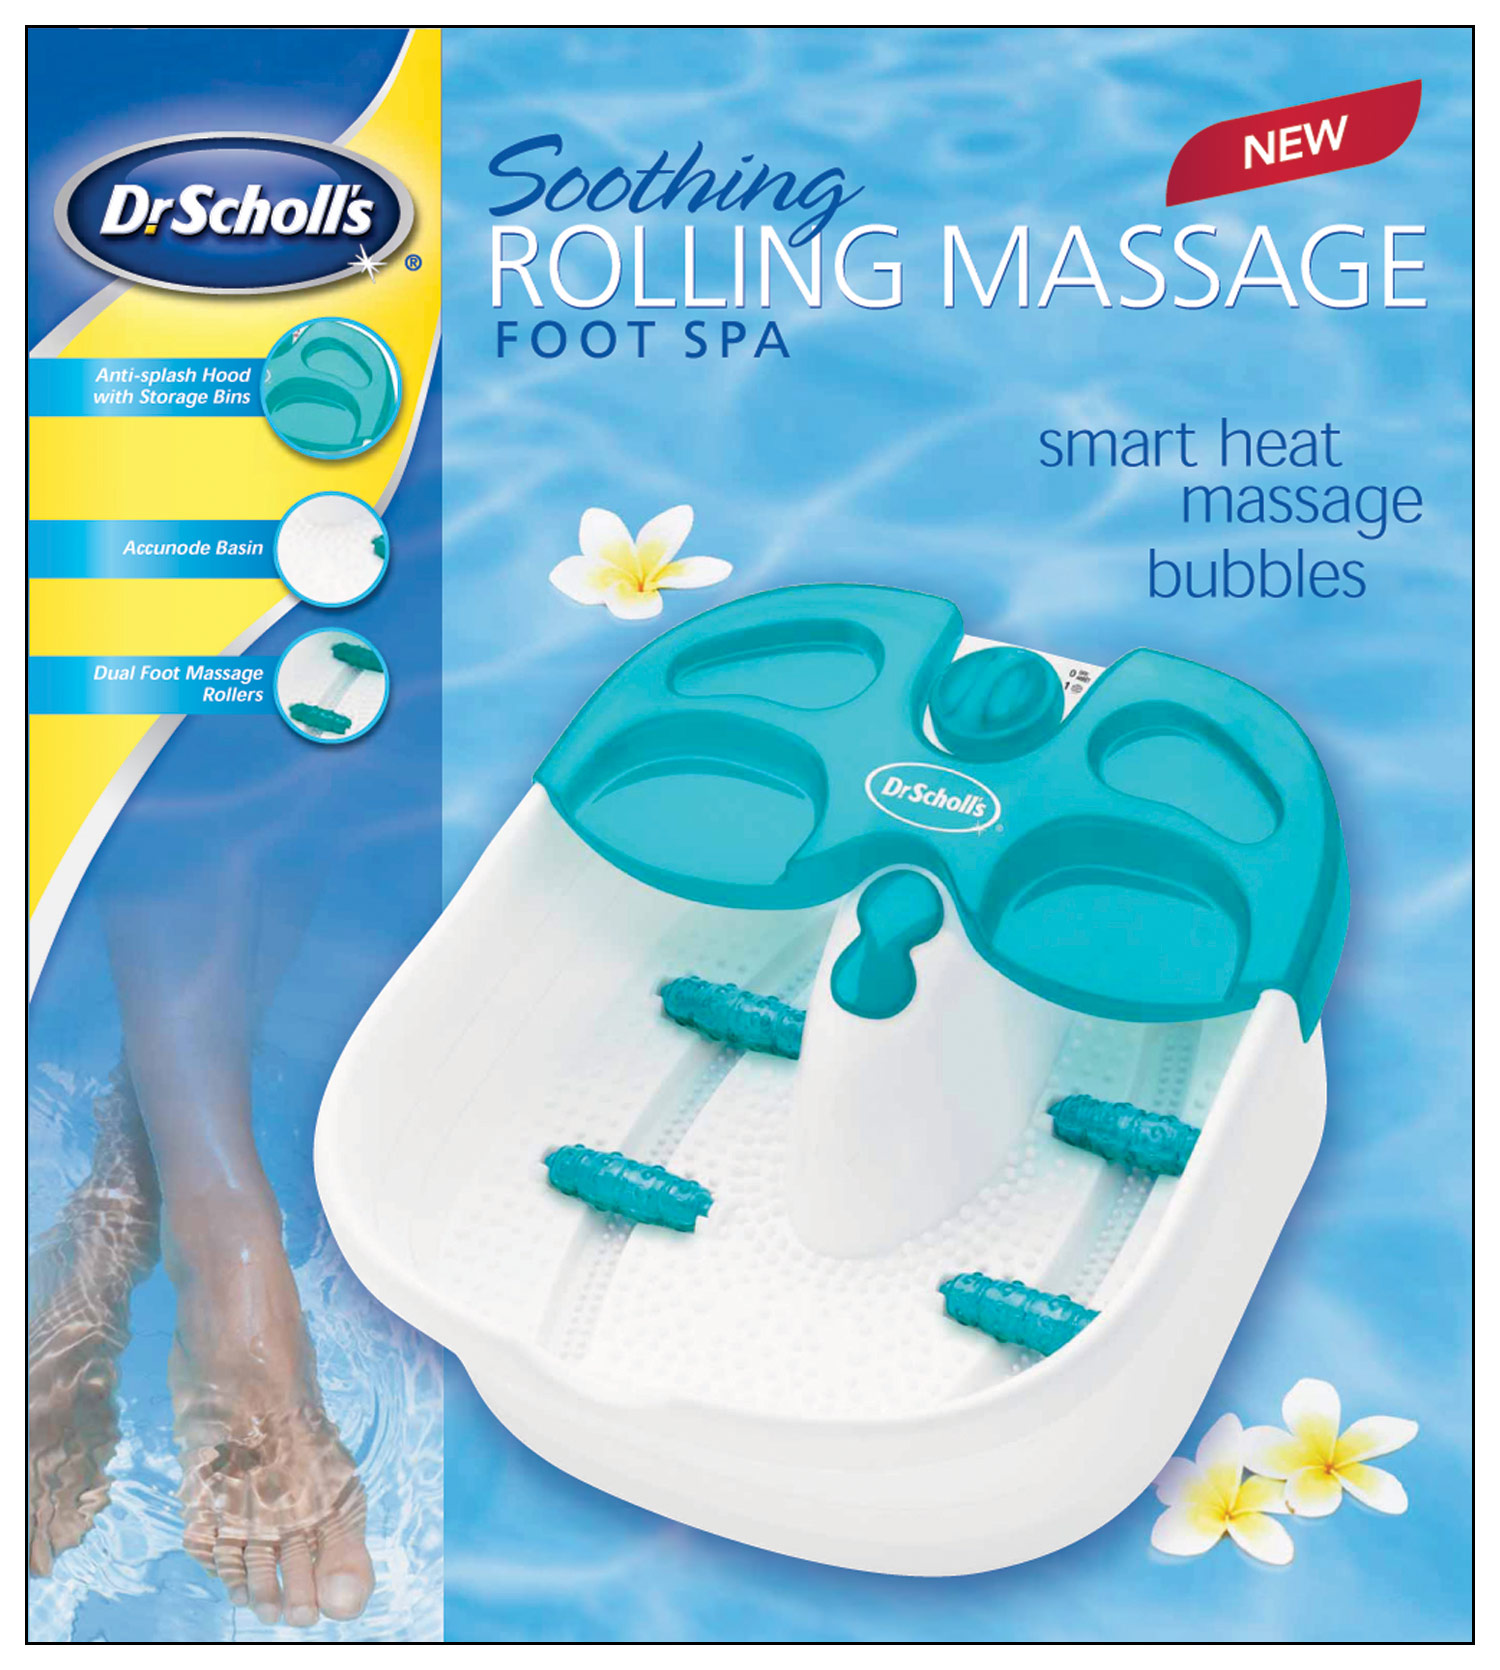 holte verachten Trouwens Best Buy: Dr. Scholl's Rolling Massage Foot Spa White/Green DRFB7008B1